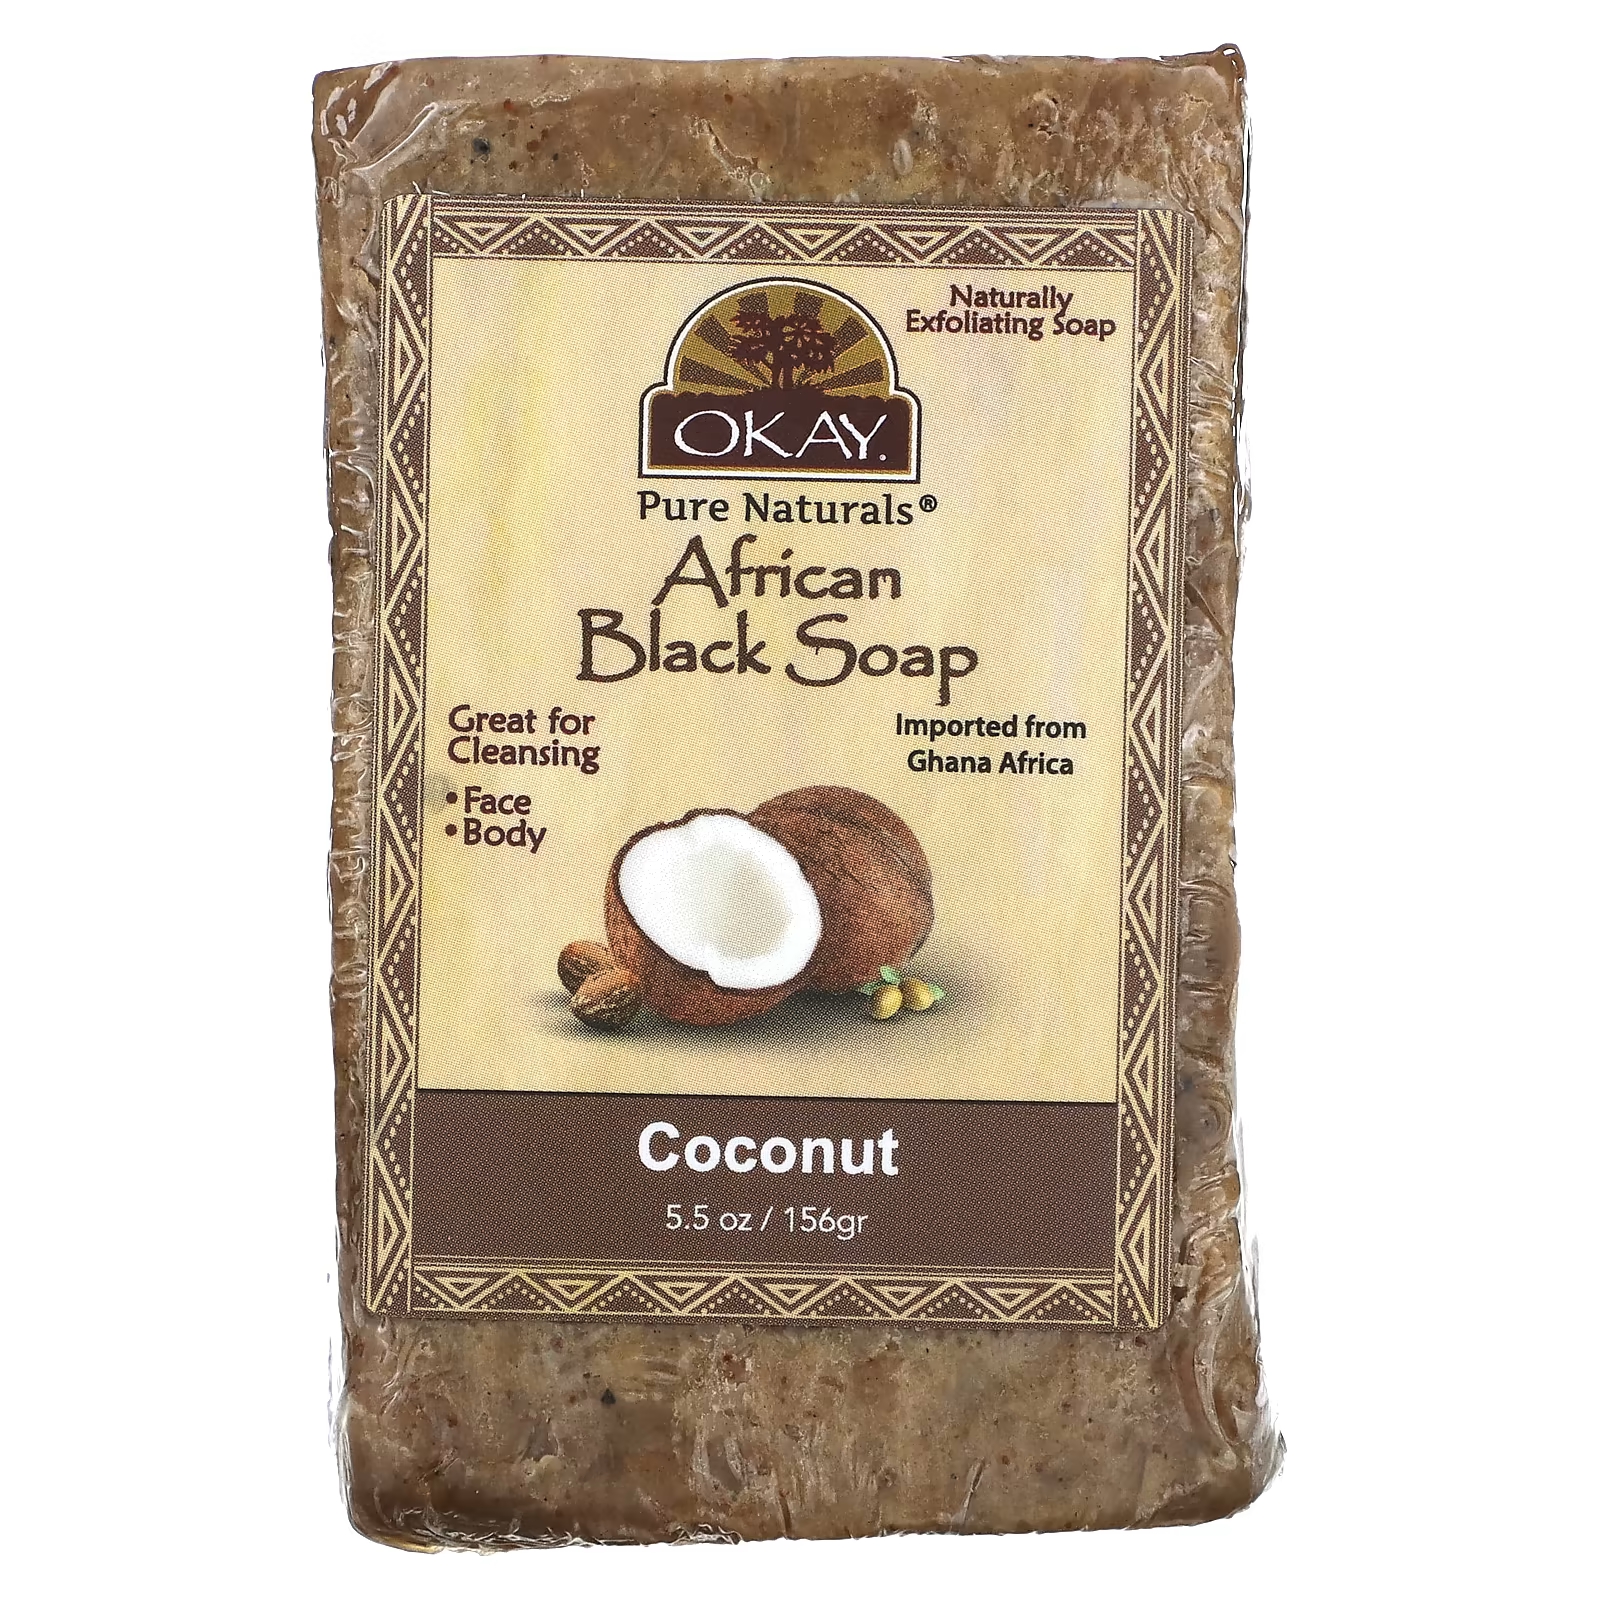 Африканское черное мыло с кокосом Okay Pure Naturals